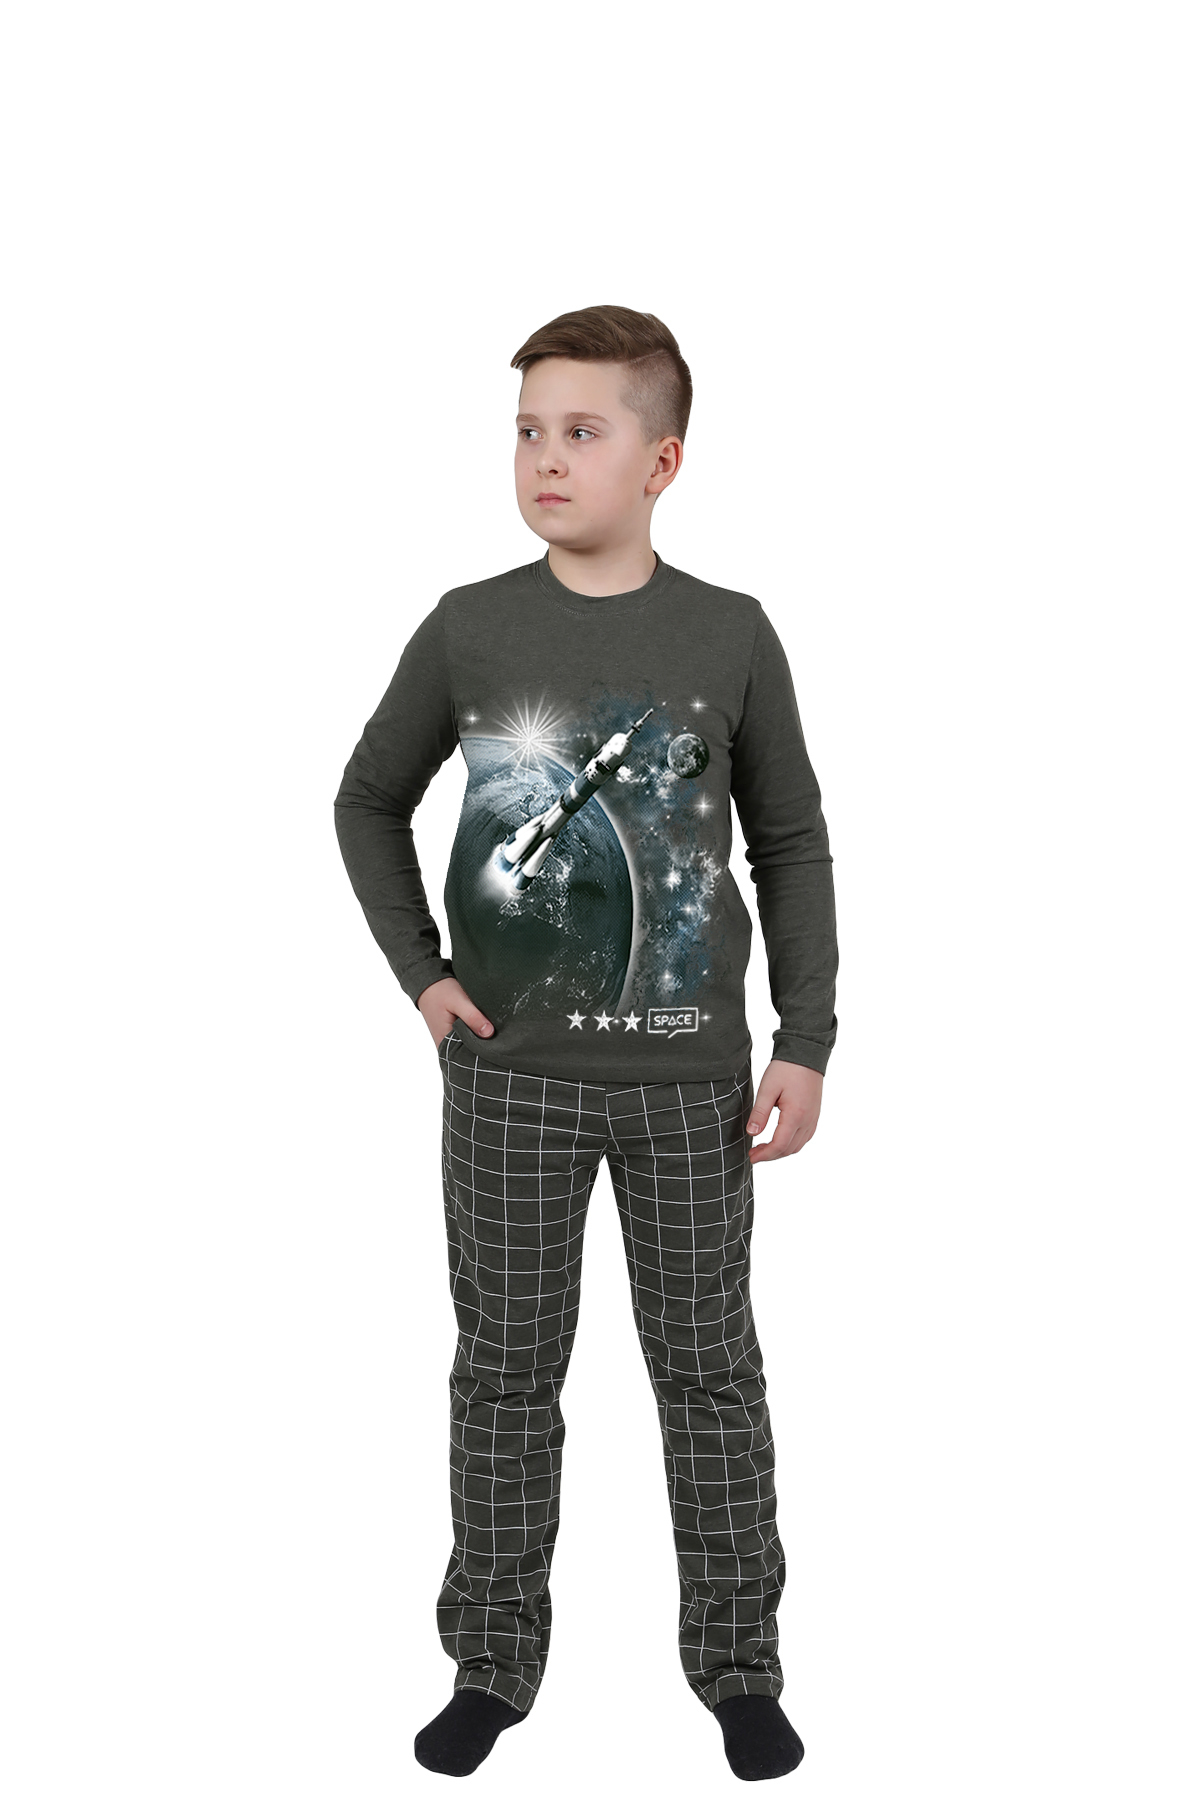 Детская пижама Космос Цвет: Хаки (11 лет), размер 11 лет otj636475 Детская пижама Космос Цвет: Хаки (11 лет) - фото 1